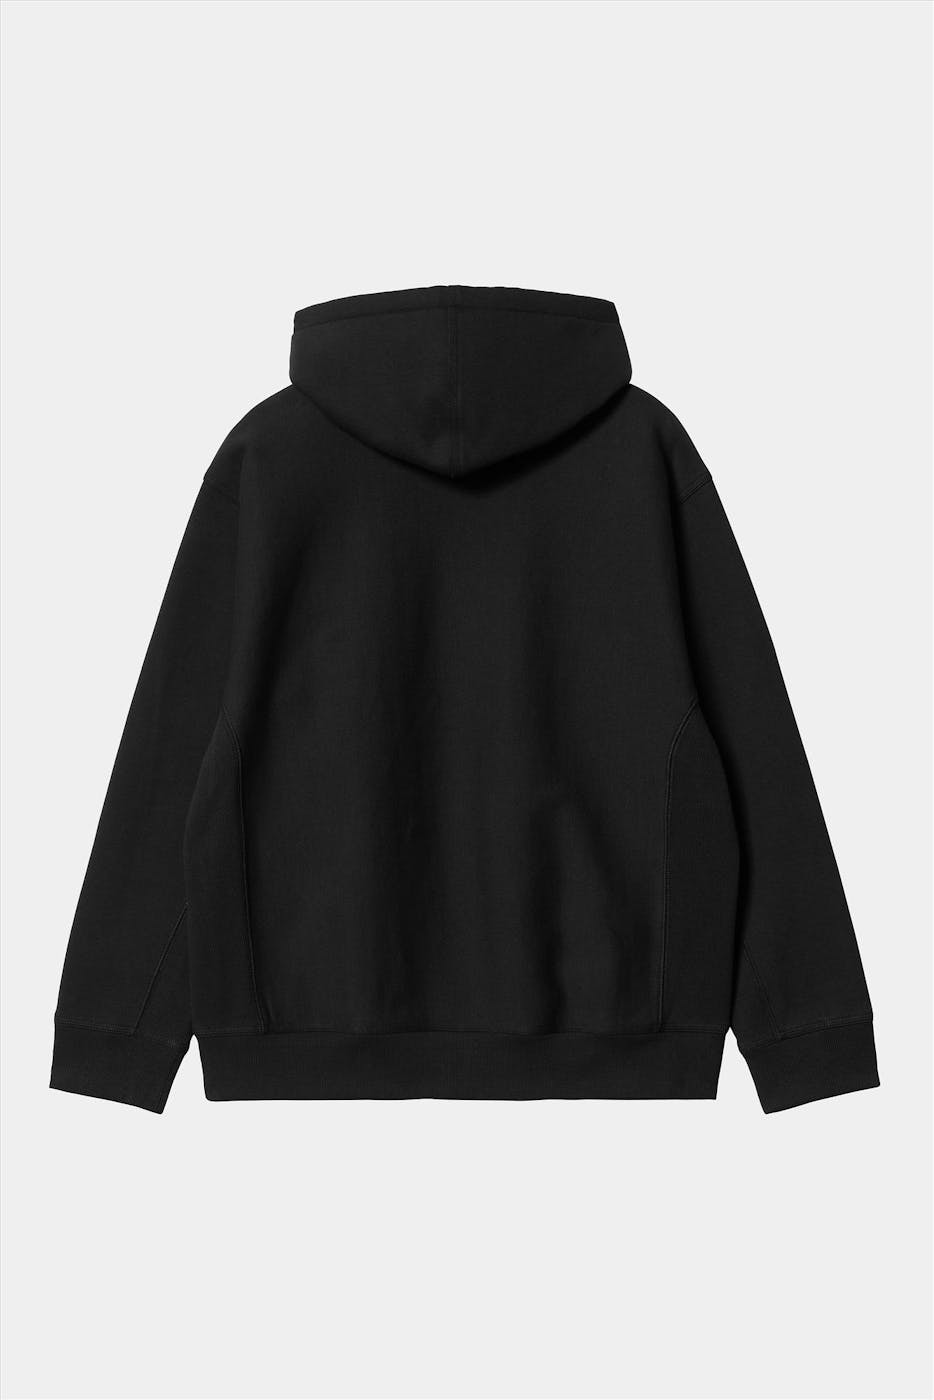 Carhartt WIP - Zwarte Hooded American Script Sweater